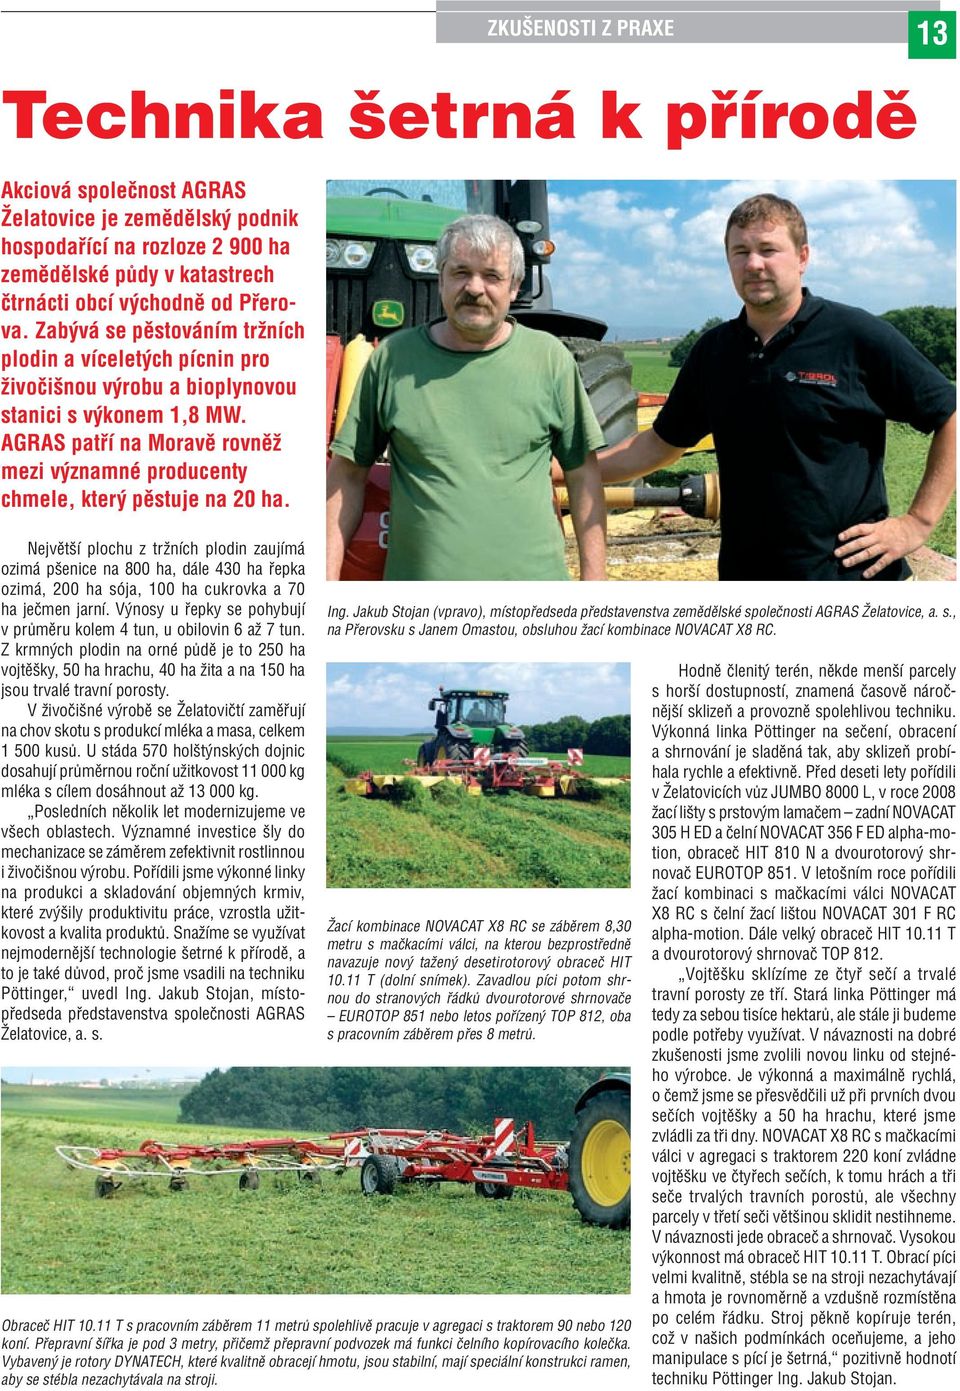 AGRAS patří na Moravě rovněž mezi významné producenty chmele, který pěstuje na 20 ha.